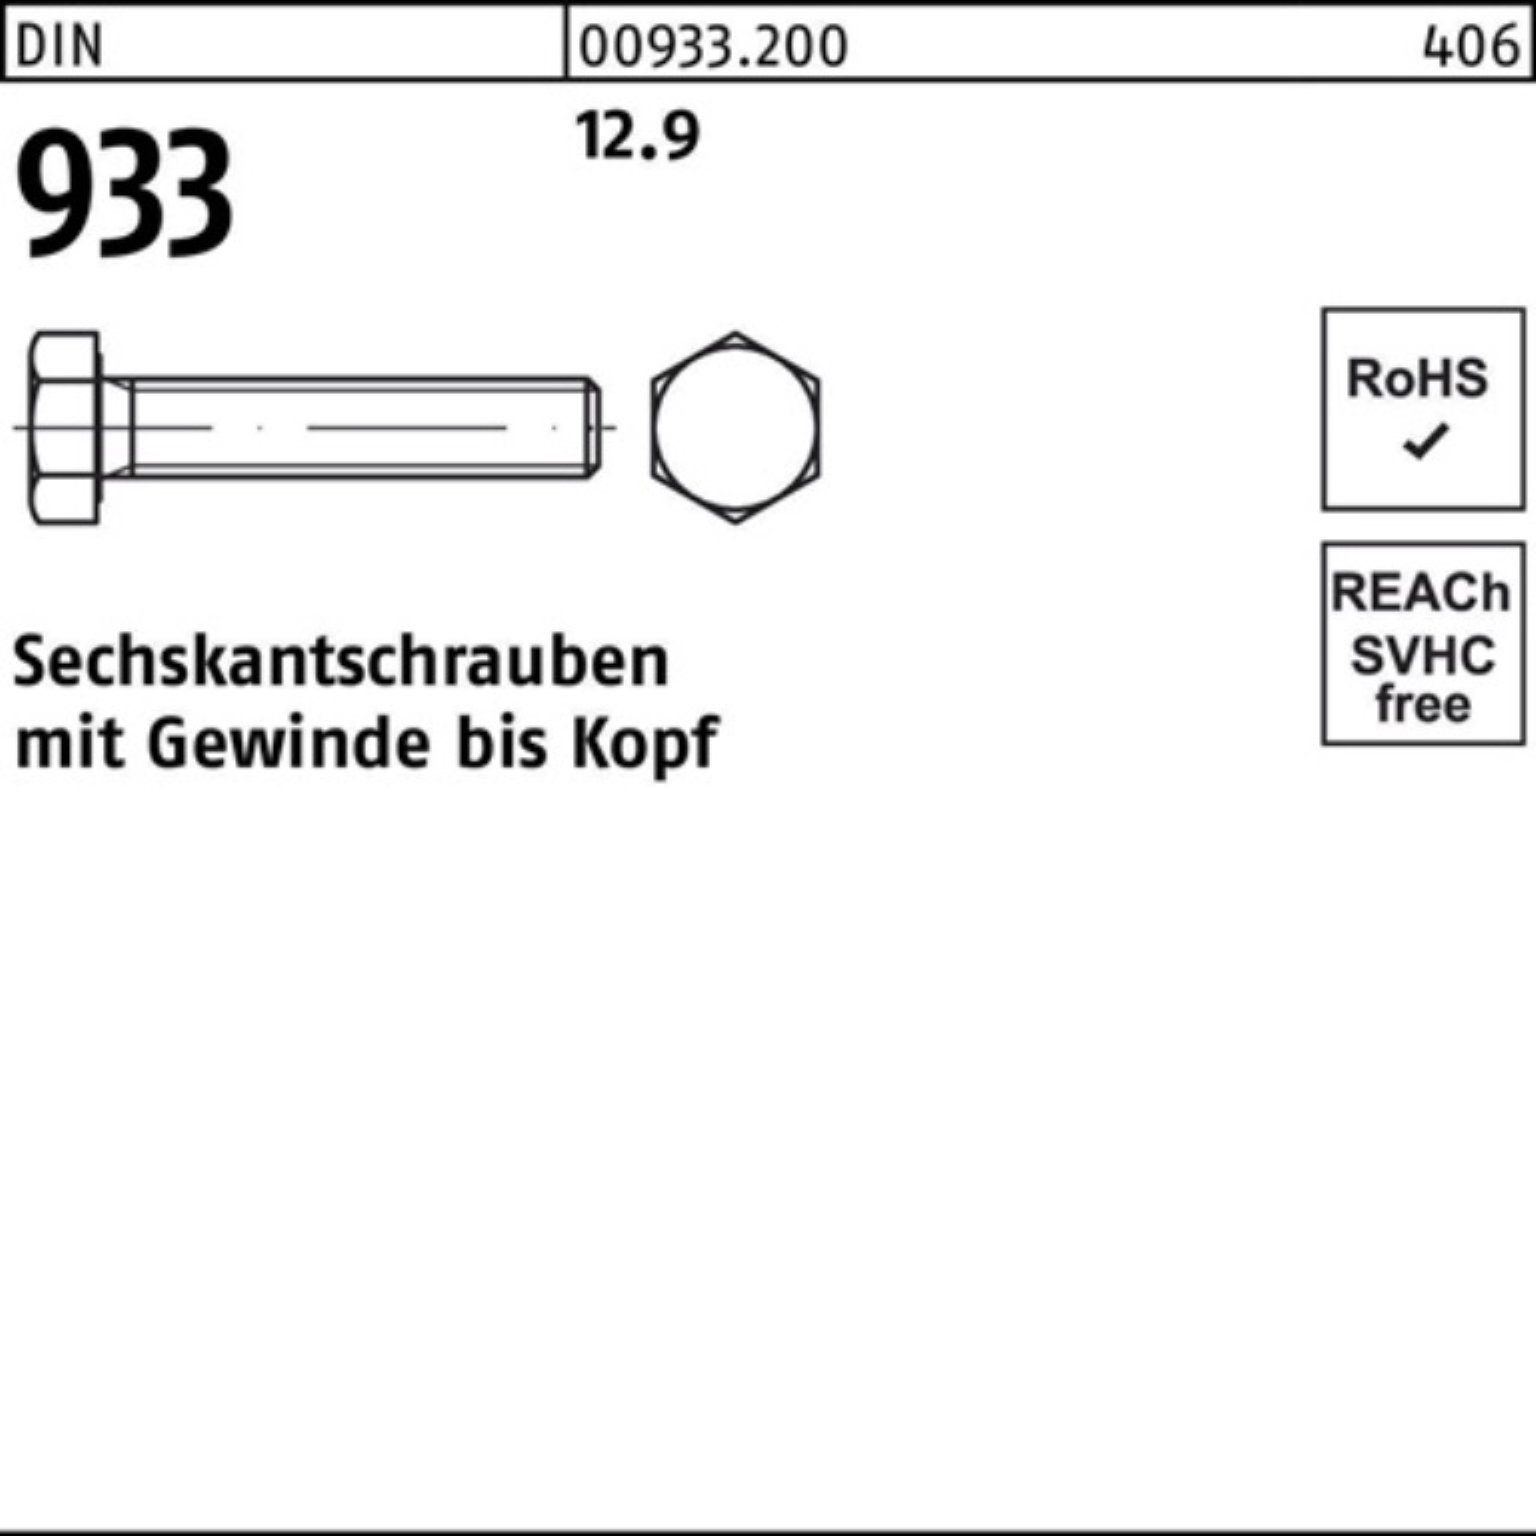 Reyher Sechskantschraube M8x 200 Stück Pack 933 200er 35 VG DIN 12.9 DIN Sechskantschraube 933